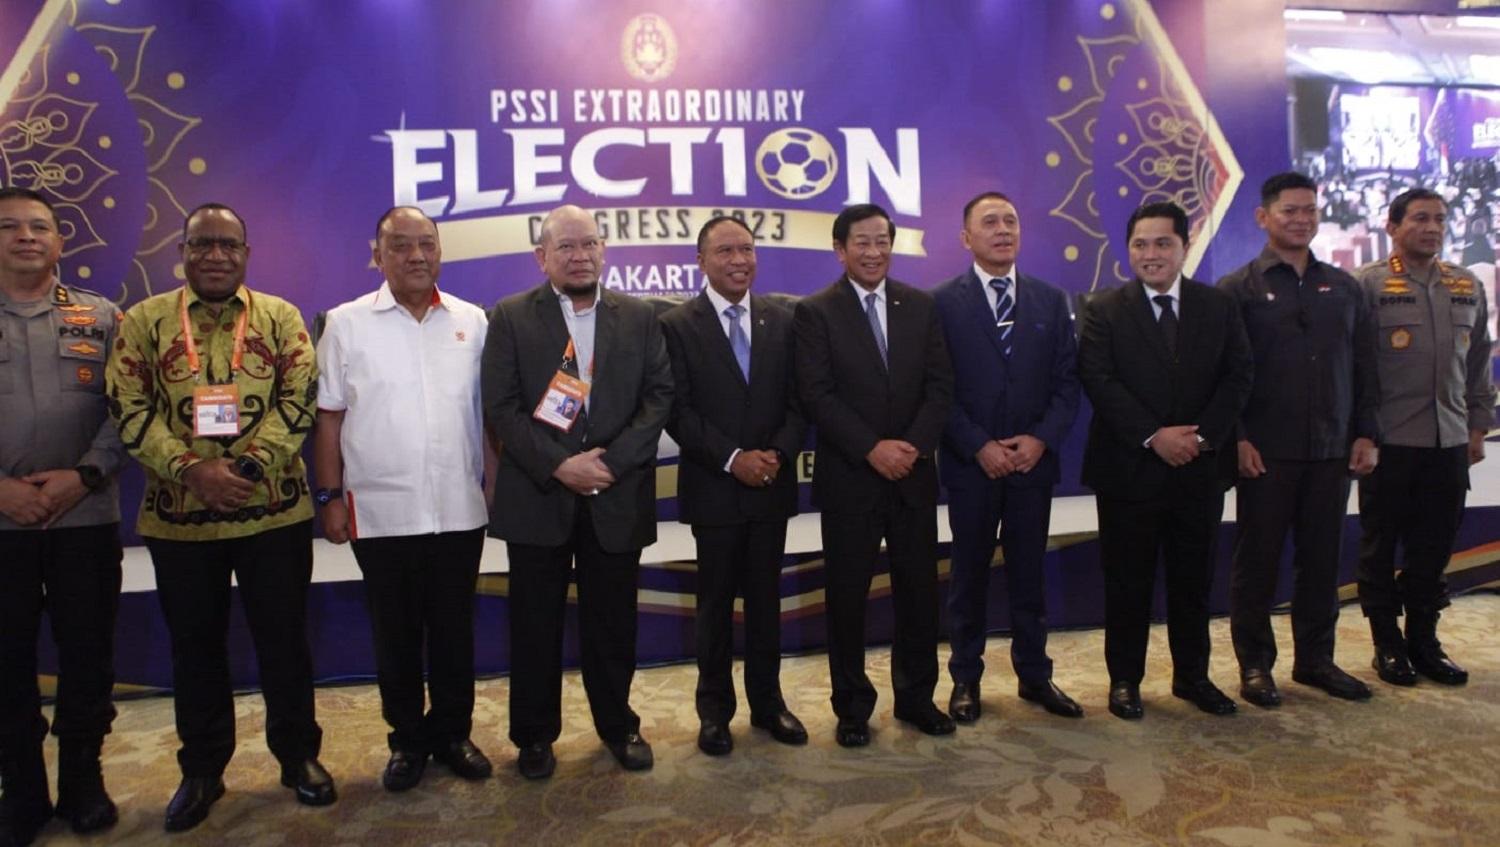 KLB PSSI telah berakhir dengan menghasilkan Erick Thohir sebagai Ketum baru, serta 12 orang telah terpilih menjadi anggota Komite Eksekutif (Exco) PSSI 23-27. - INDOSPORT